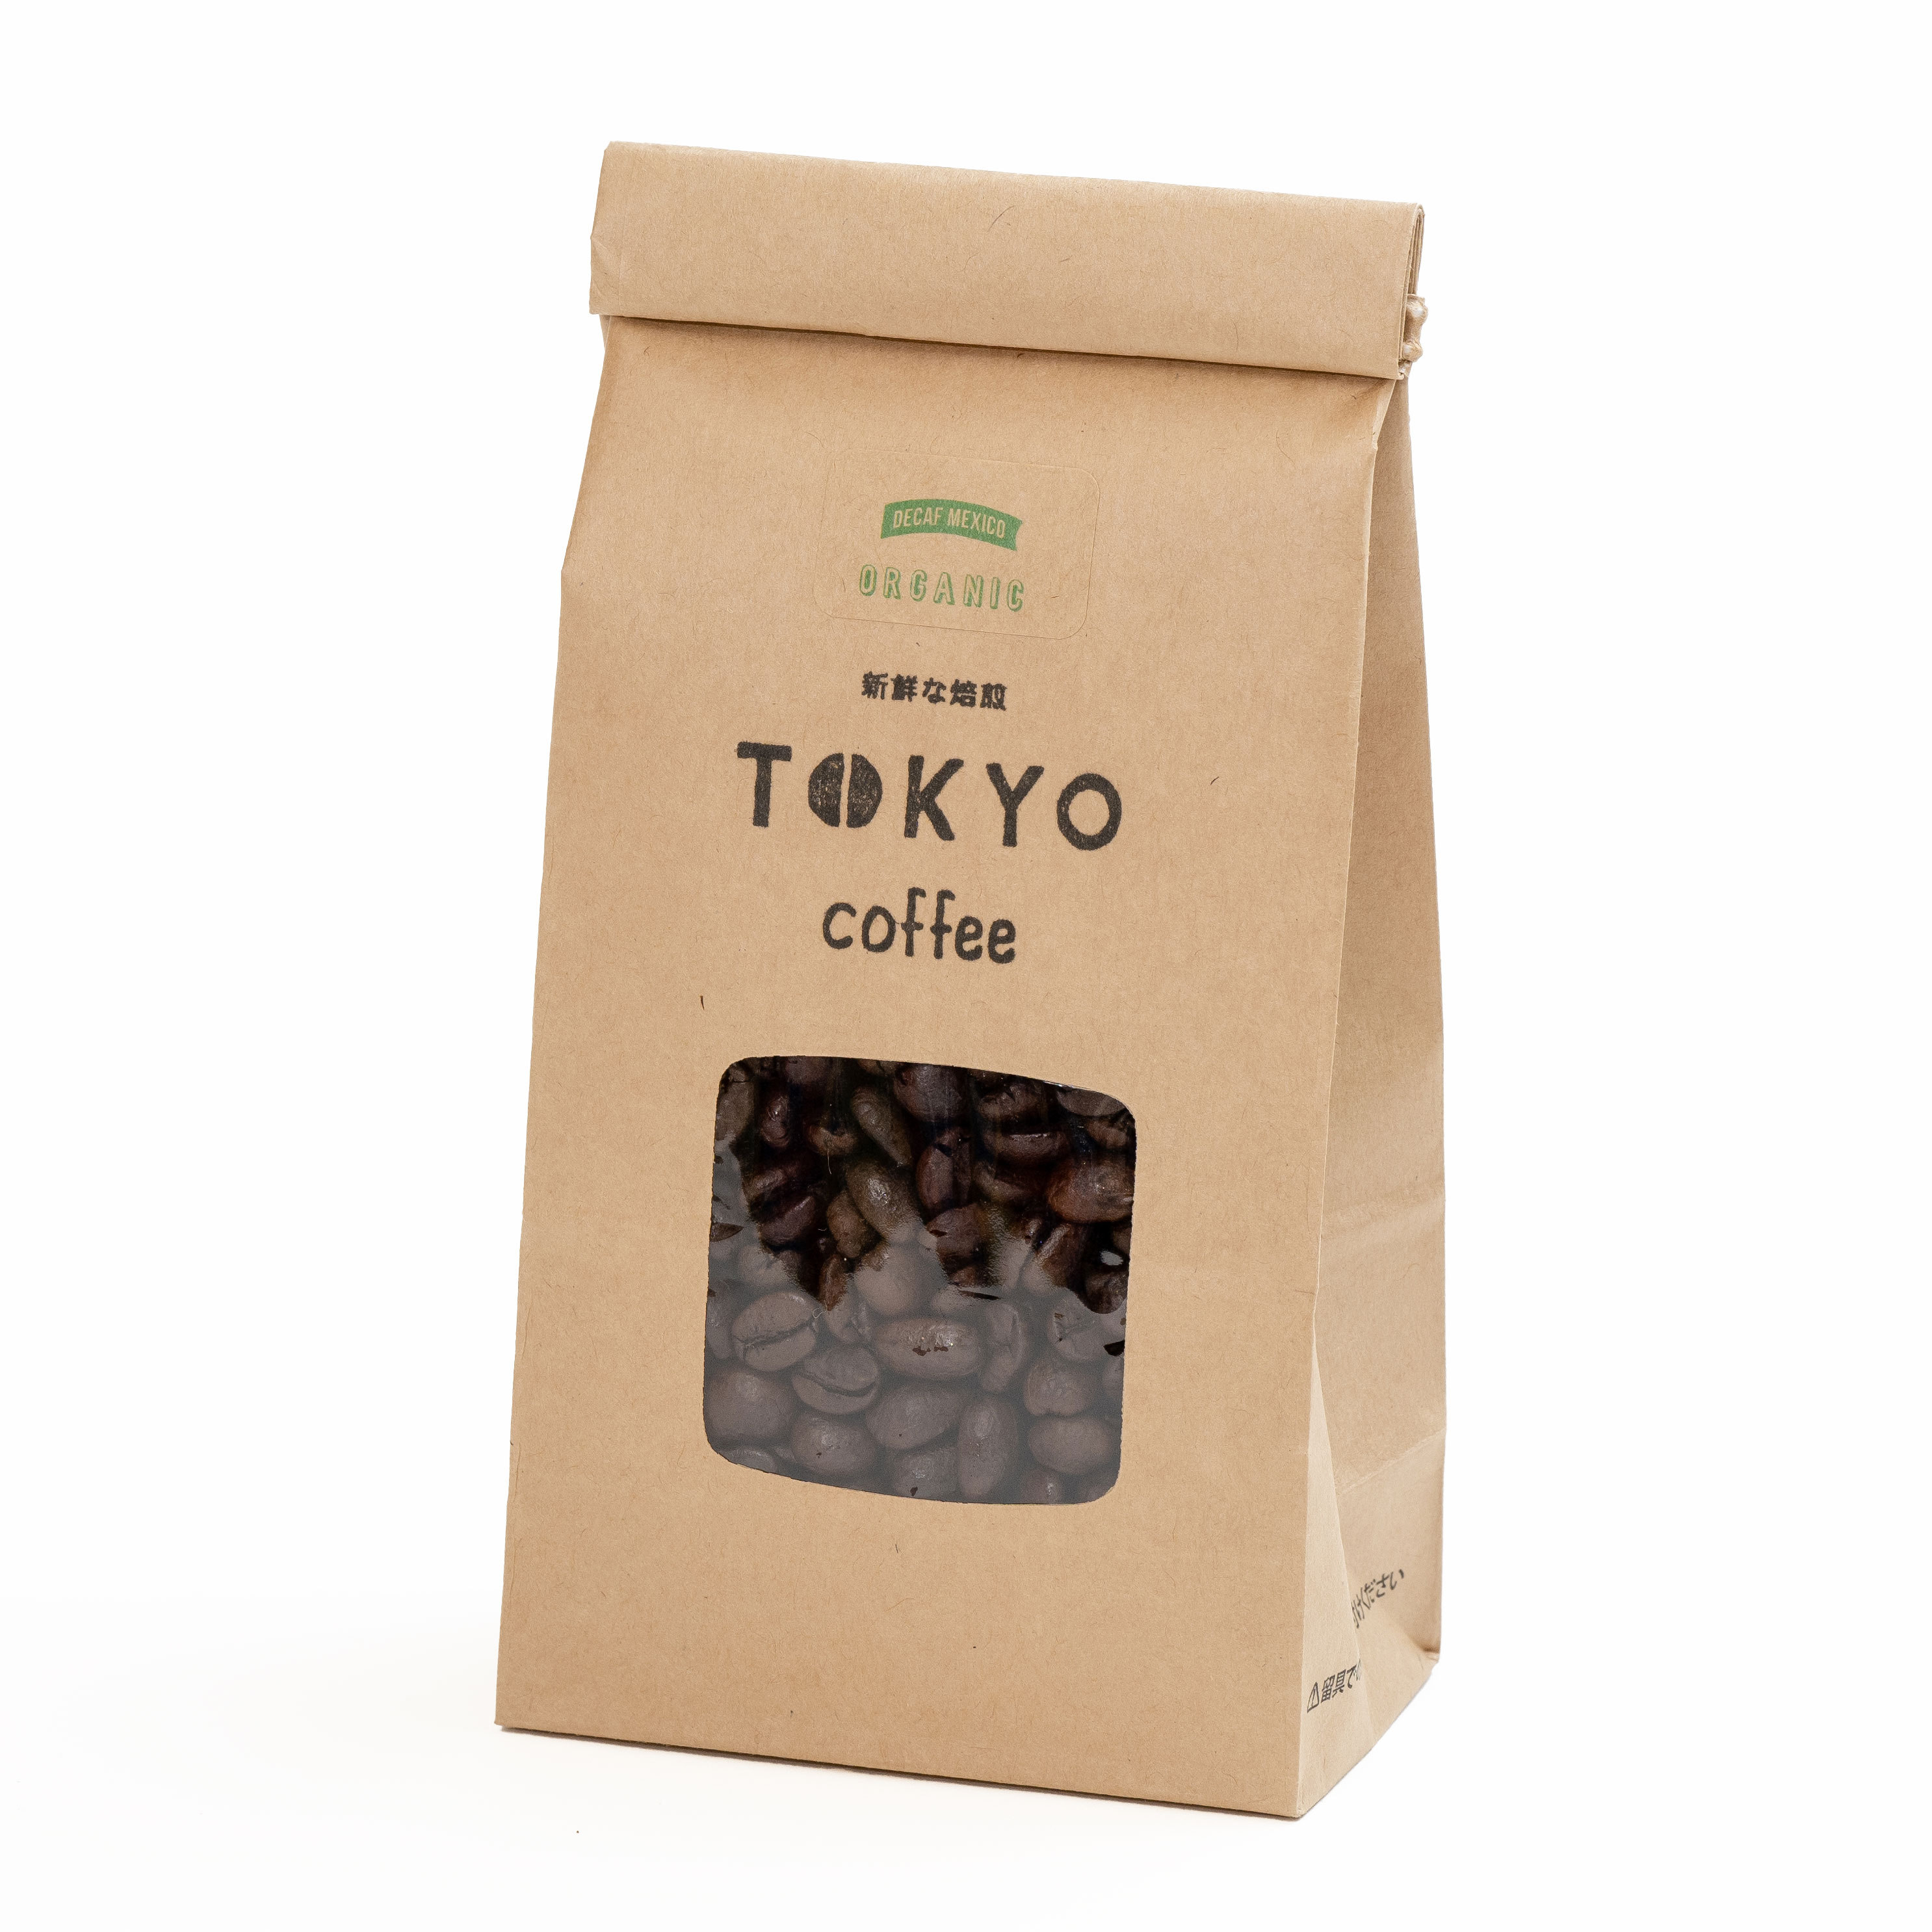 TOKYO COFFEE オーガニック コーヒー デカフェ メキシコ 400g コーヒー豆 こーひー豆 珈琲豆 浅煎り デカフェコーヒー デカフェコーヒー豆 オーガニックコーヒー 豆 オーガニック珈琲 有機コーヒー 美味しい おいしい 400gでコーヒー約28杯分